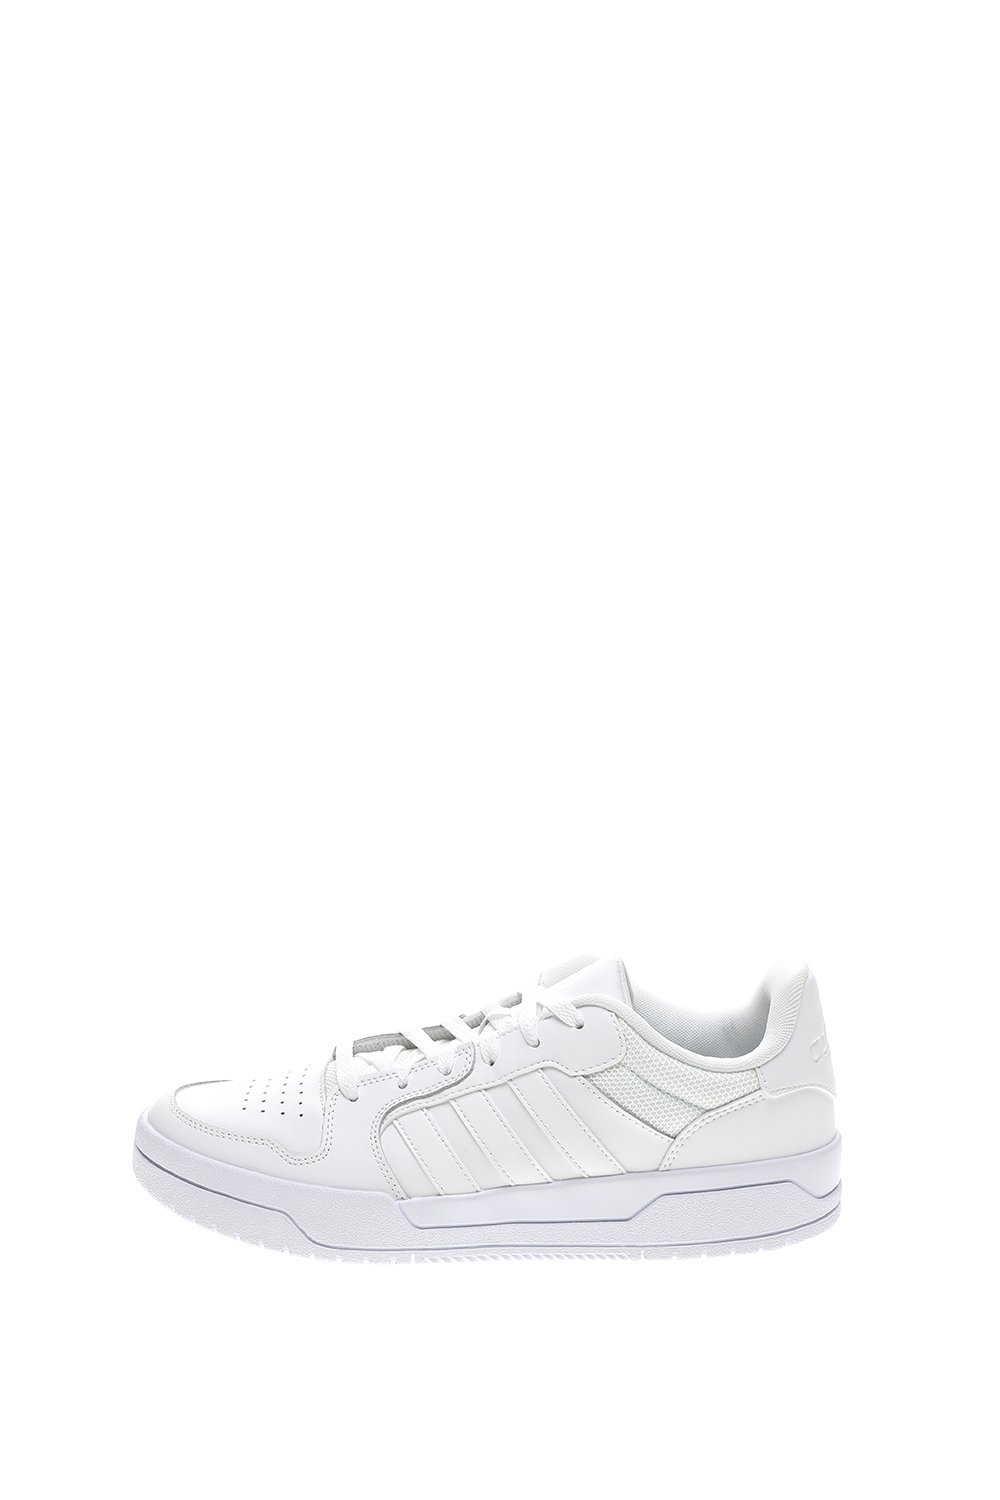 Ανδρικά/Παπούτσια/Αθλητικά/Tennis adidas Originals - Ανδρικά παπούτσια tennis adidas Originals Entrap 1ON1 λευκά